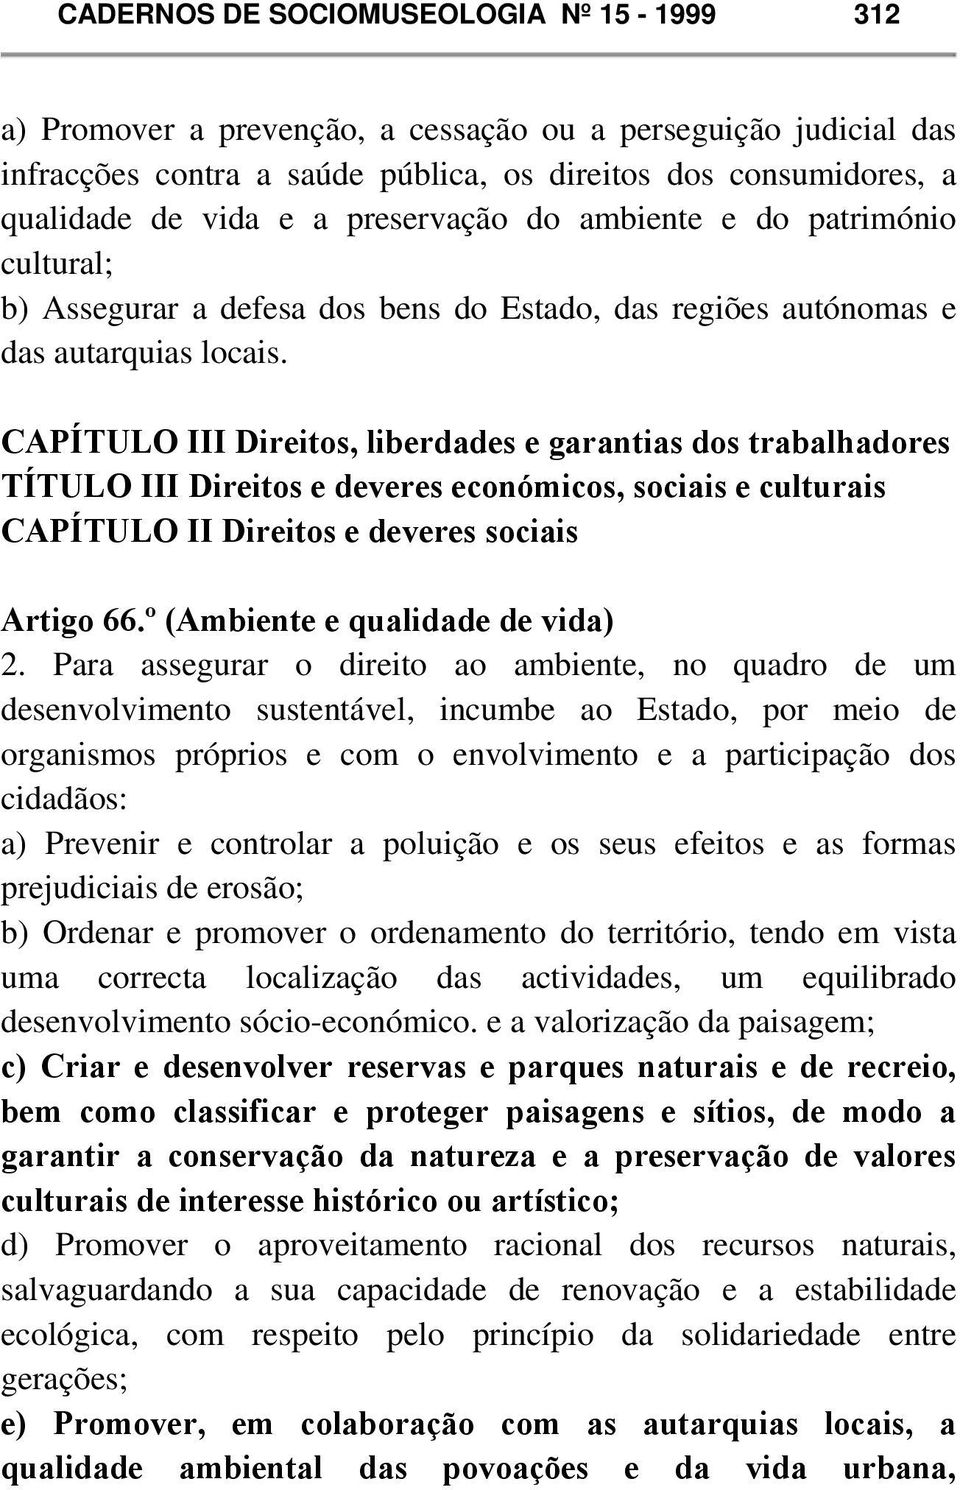 CAPÍTULO III Direitos, liberdades e garantias dos trabalhadores TÍTULO III Direitos e deveres económicos, sociais e culturais CAPÍTULO II Direitos e deveres sociais Artigo 66.